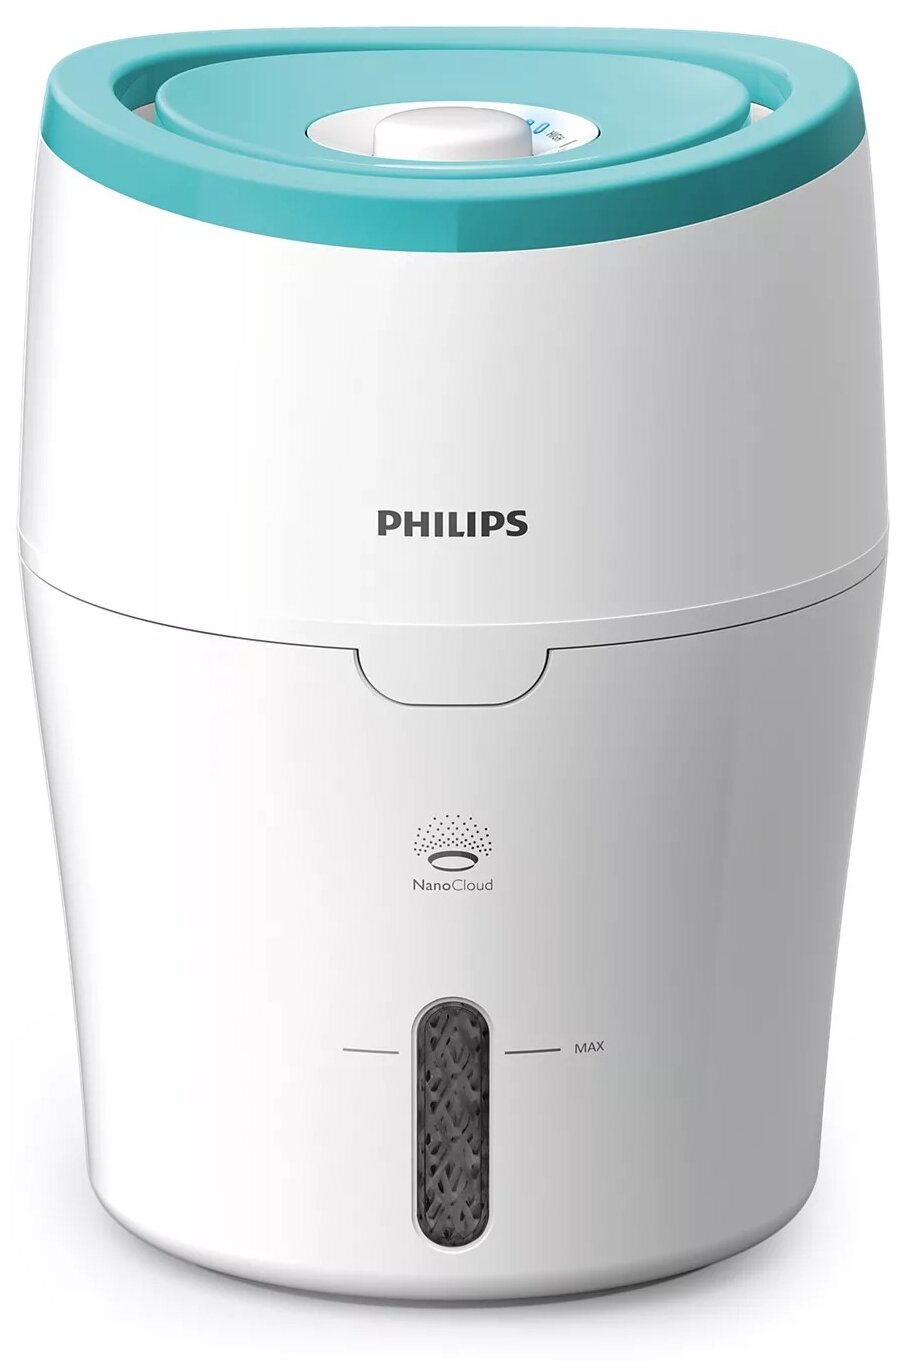  Увлажнитель воздуха Philips HU4801/01, белый/светло-зеленый 